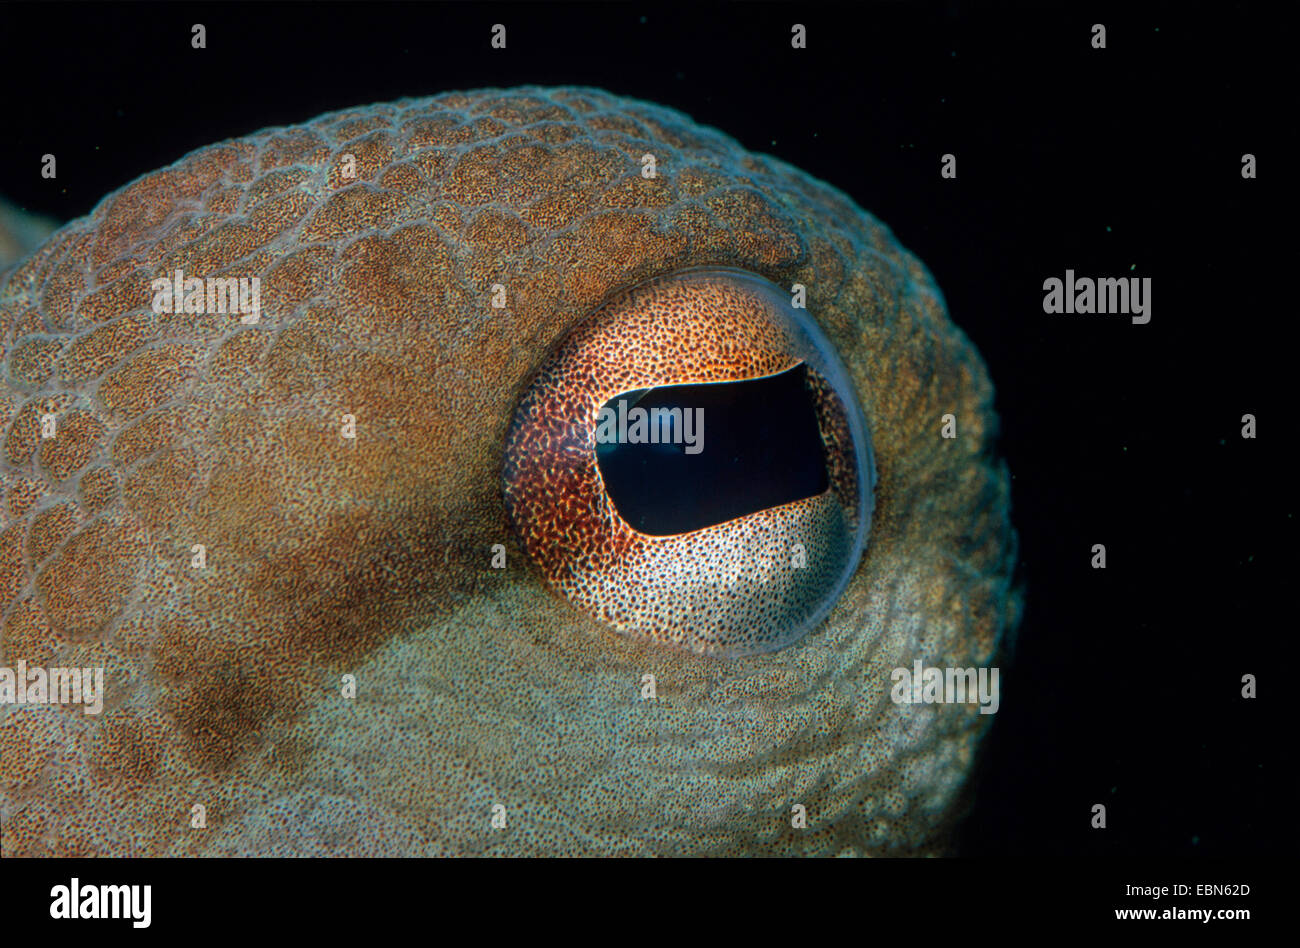 Poulpe commun, Octopus, Atlantique commun européen commun poulpe (Octopus vulgaris), gros plan d'un oeil Banque D'Images